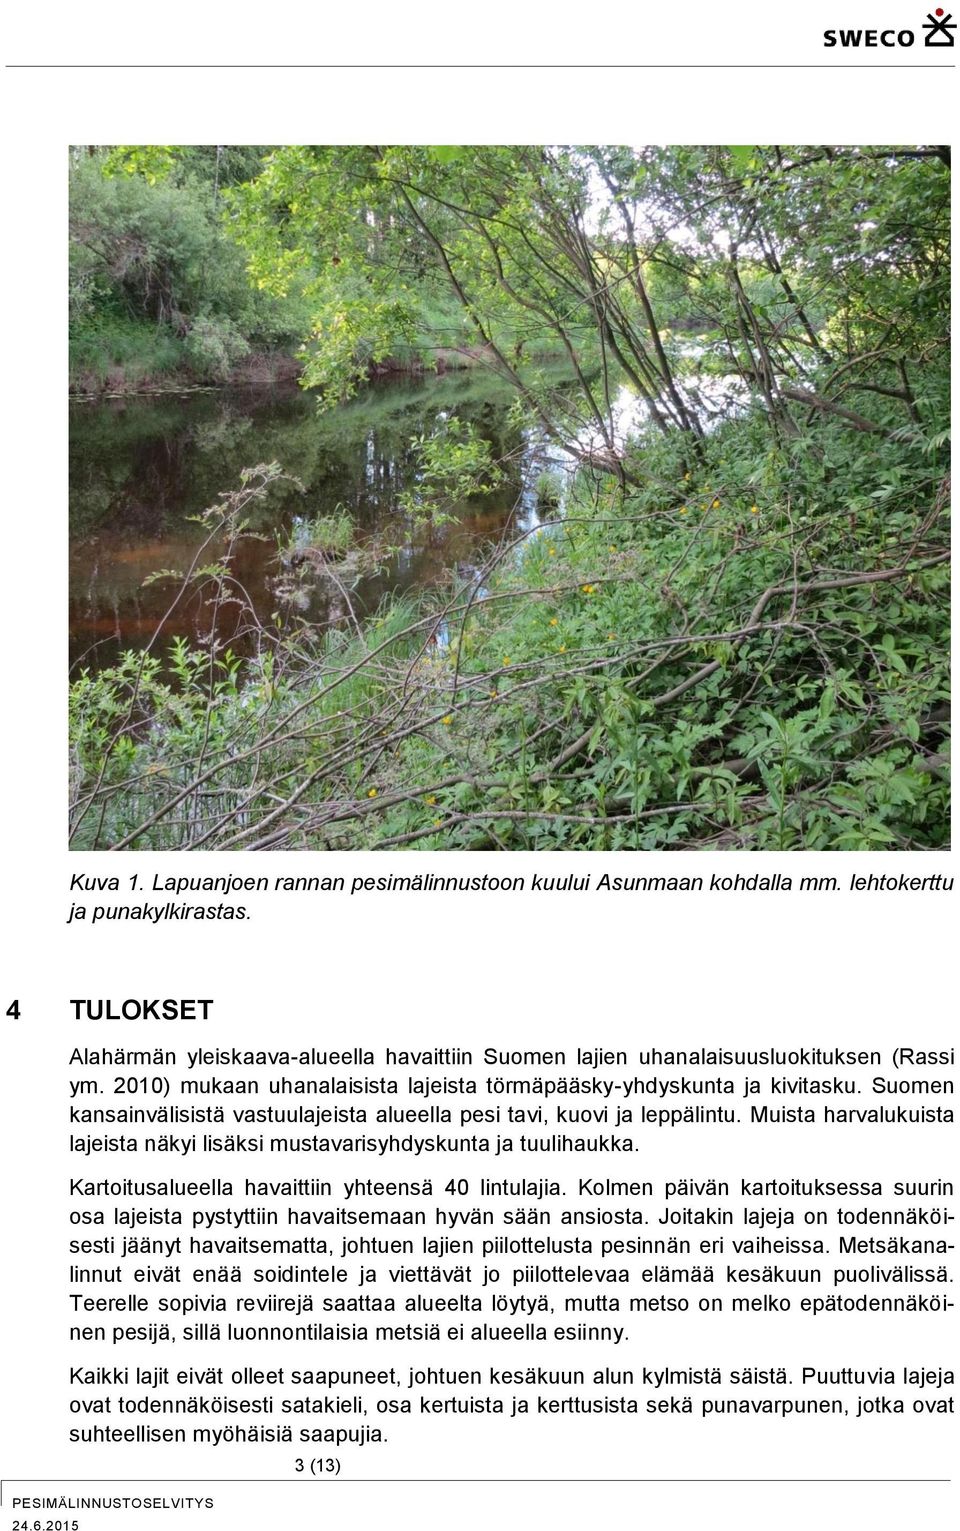 Suomen kansainvälisistä vastuulajeista alueella pesi tavi, kuovi ja leppälintu. Muista harvalukuista lajeista näkyi lisäksi mustavarisyhdyskunta ja tuulihaukka.